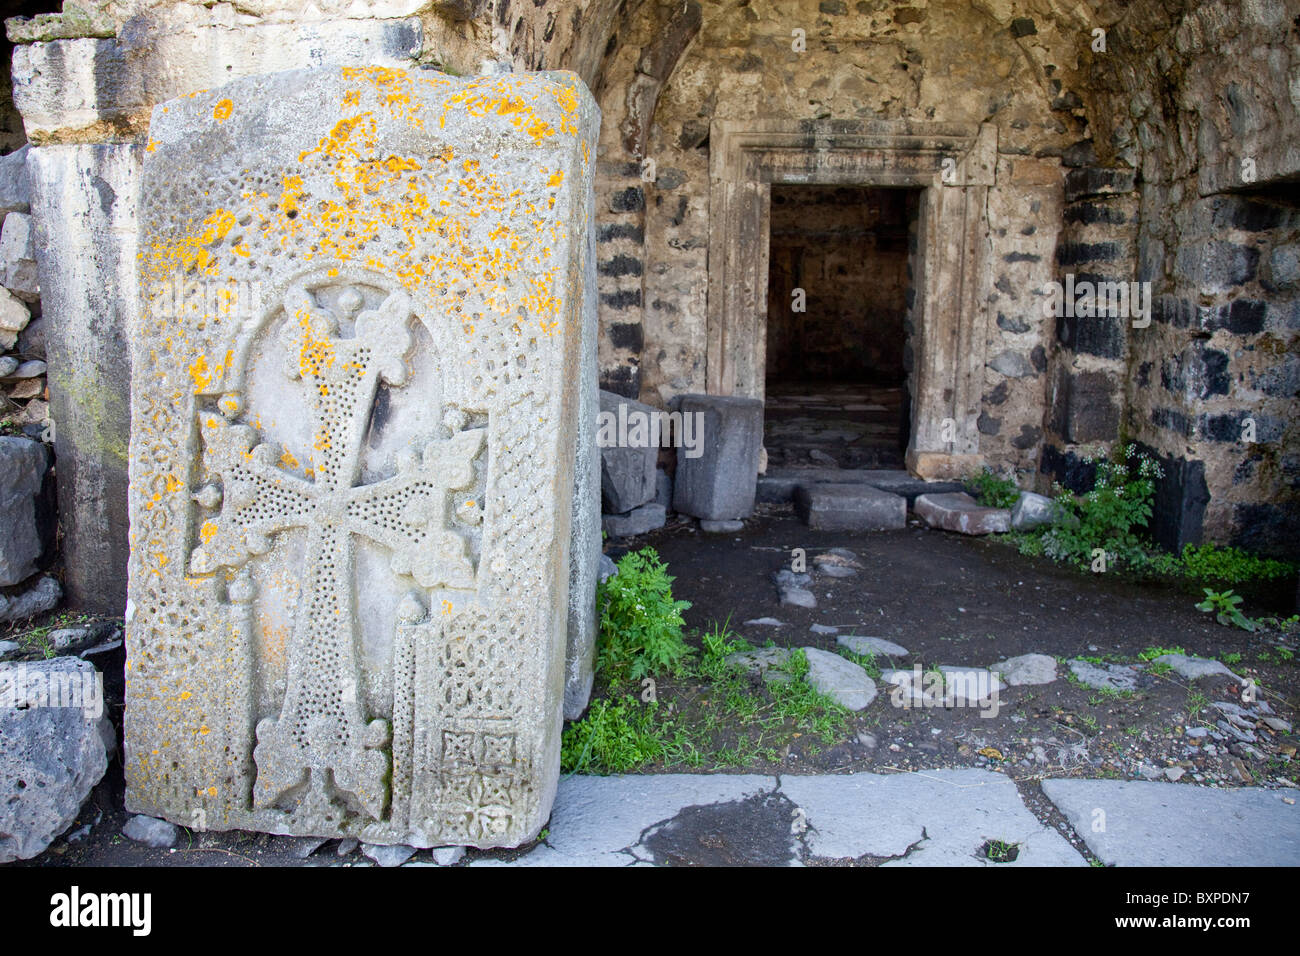 Armenian Church inside the Fortress of Lori Berd in Northern Armenia Stock Photo